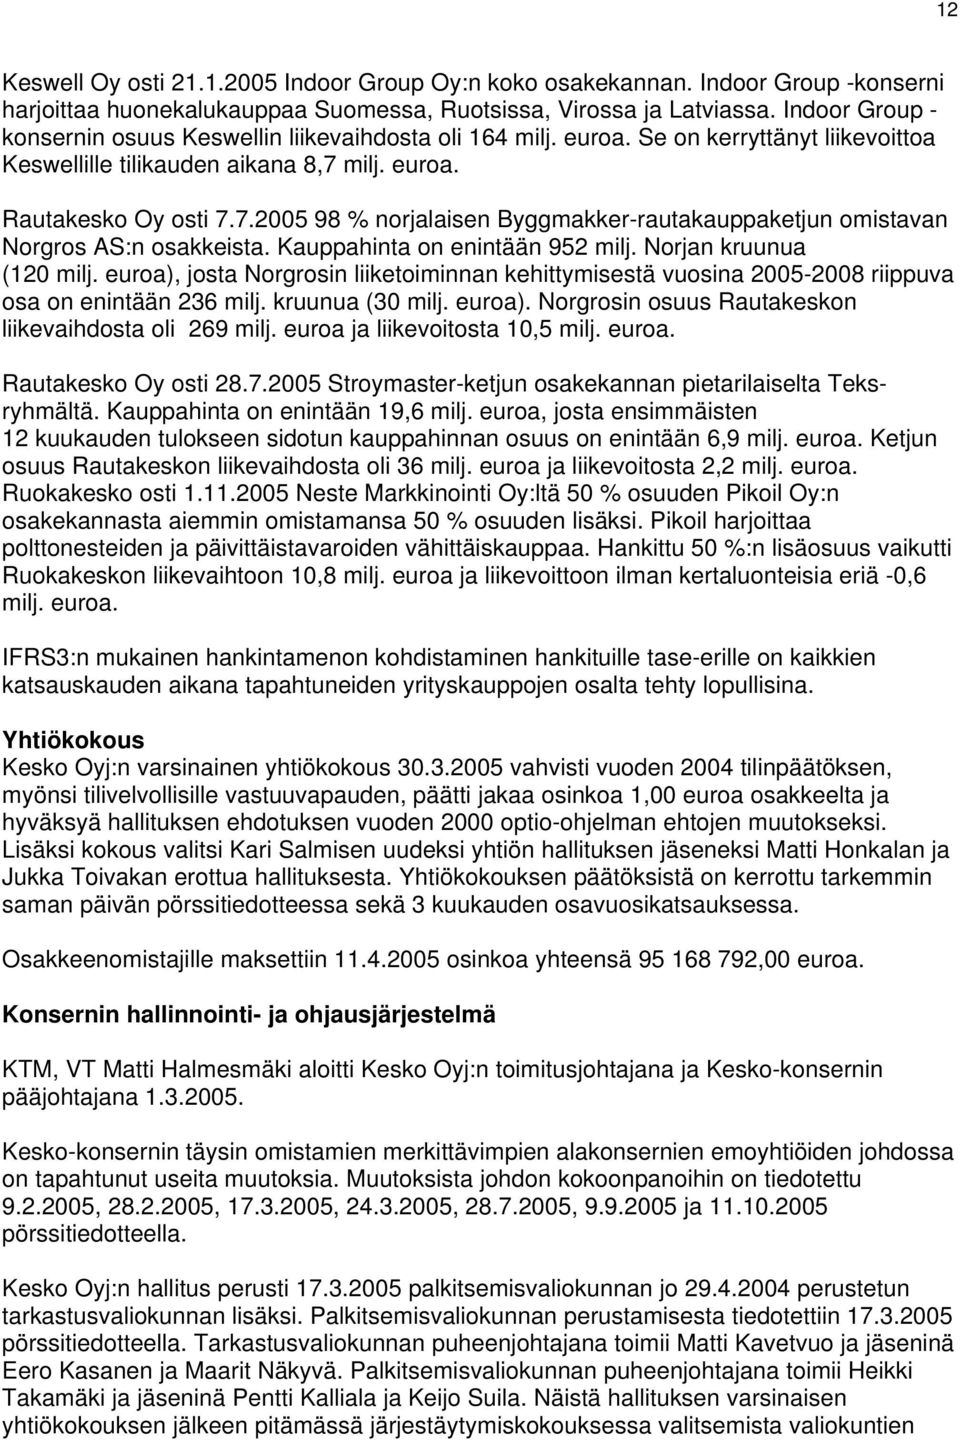 milj.. Rautakesko Oy osti 7.7. 98 % norjalaisen Byggmakker-rautakauppaketjun omistavan Norgros AS:n osakkeista. Kauppahinta on enintään 952 milj. Norjan kruunua (120 milj.